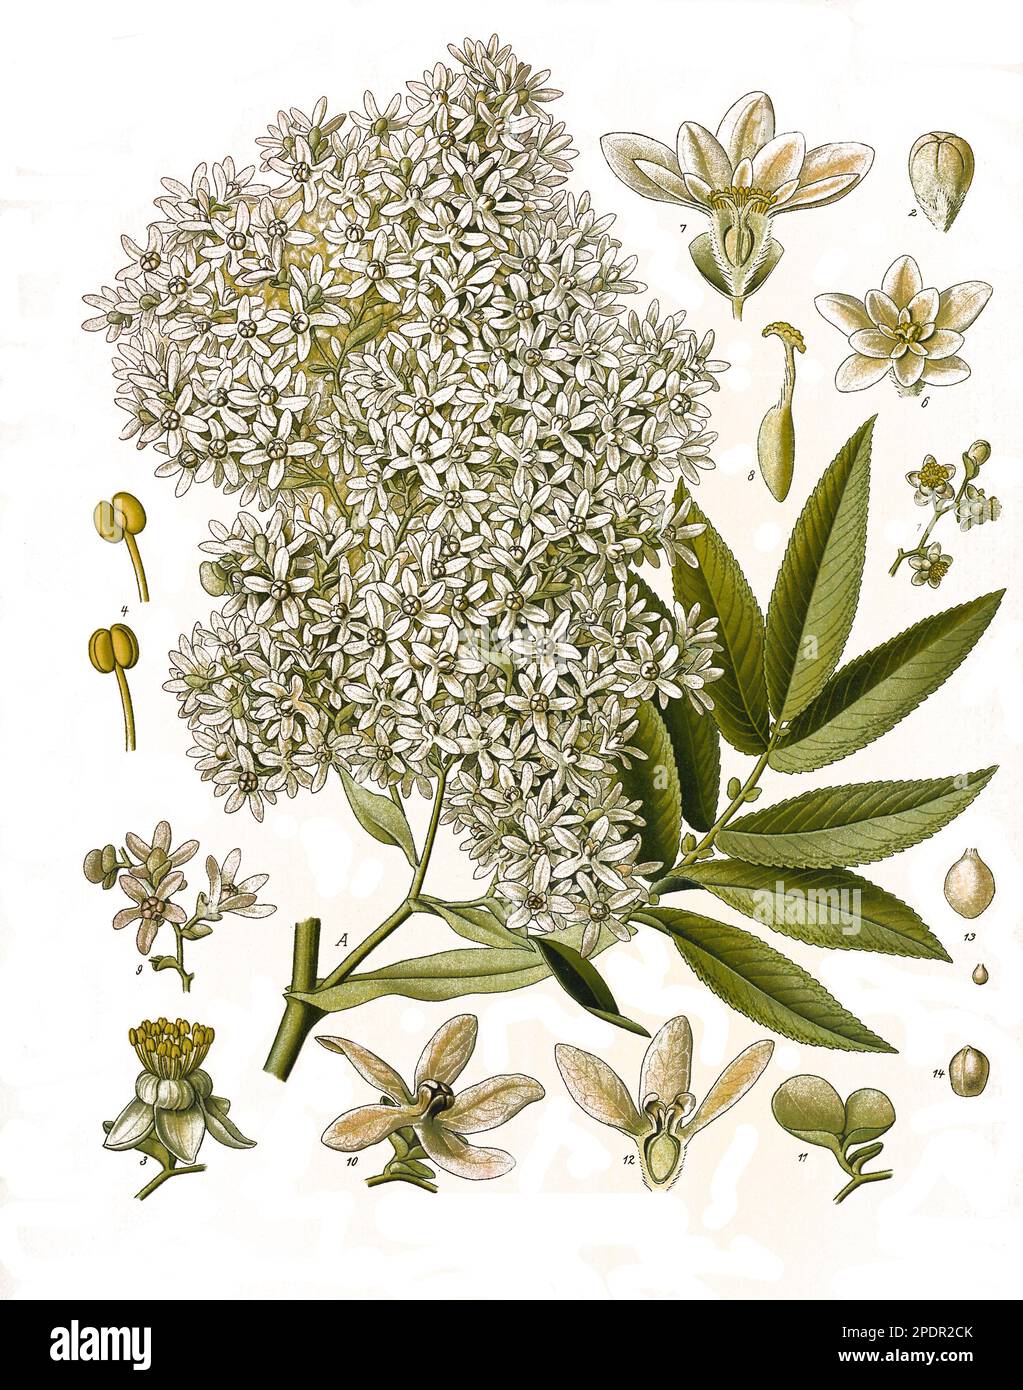 Heilpflanze, Kosobaum oder Kossobaum, Hagenia abyssinica ist die einzige Art der monotypischen Pflanzengattung Hagenia innerhalb der Familie der Rosengewächse, Historisch, digital restaurierte Reproduktion von einer Vorlage aus dem 19. Jahrhundert, Stock Photo